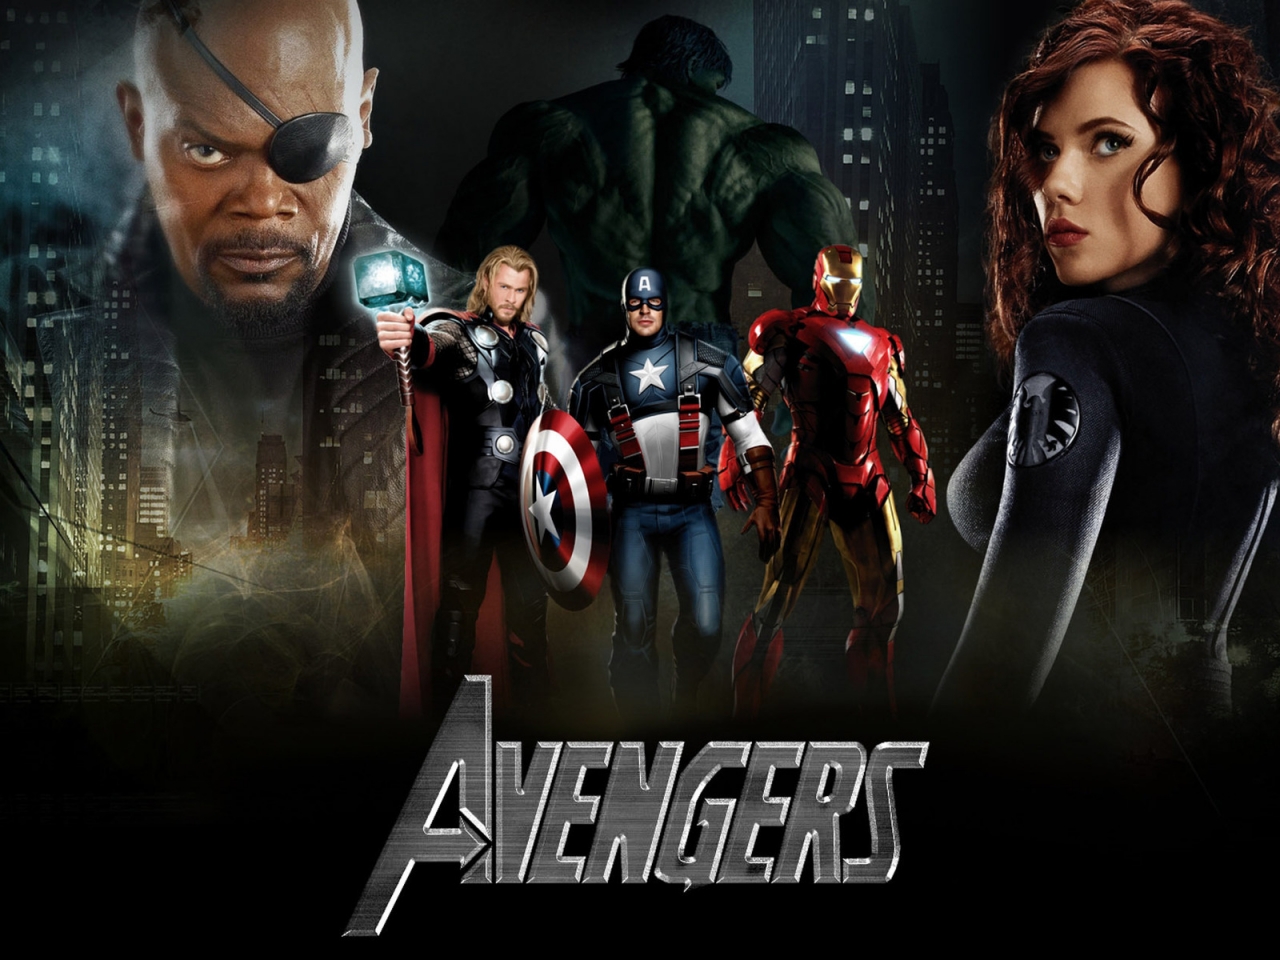 Scarlett Johansson The Avengers 2 for 1280 x 960 resolution